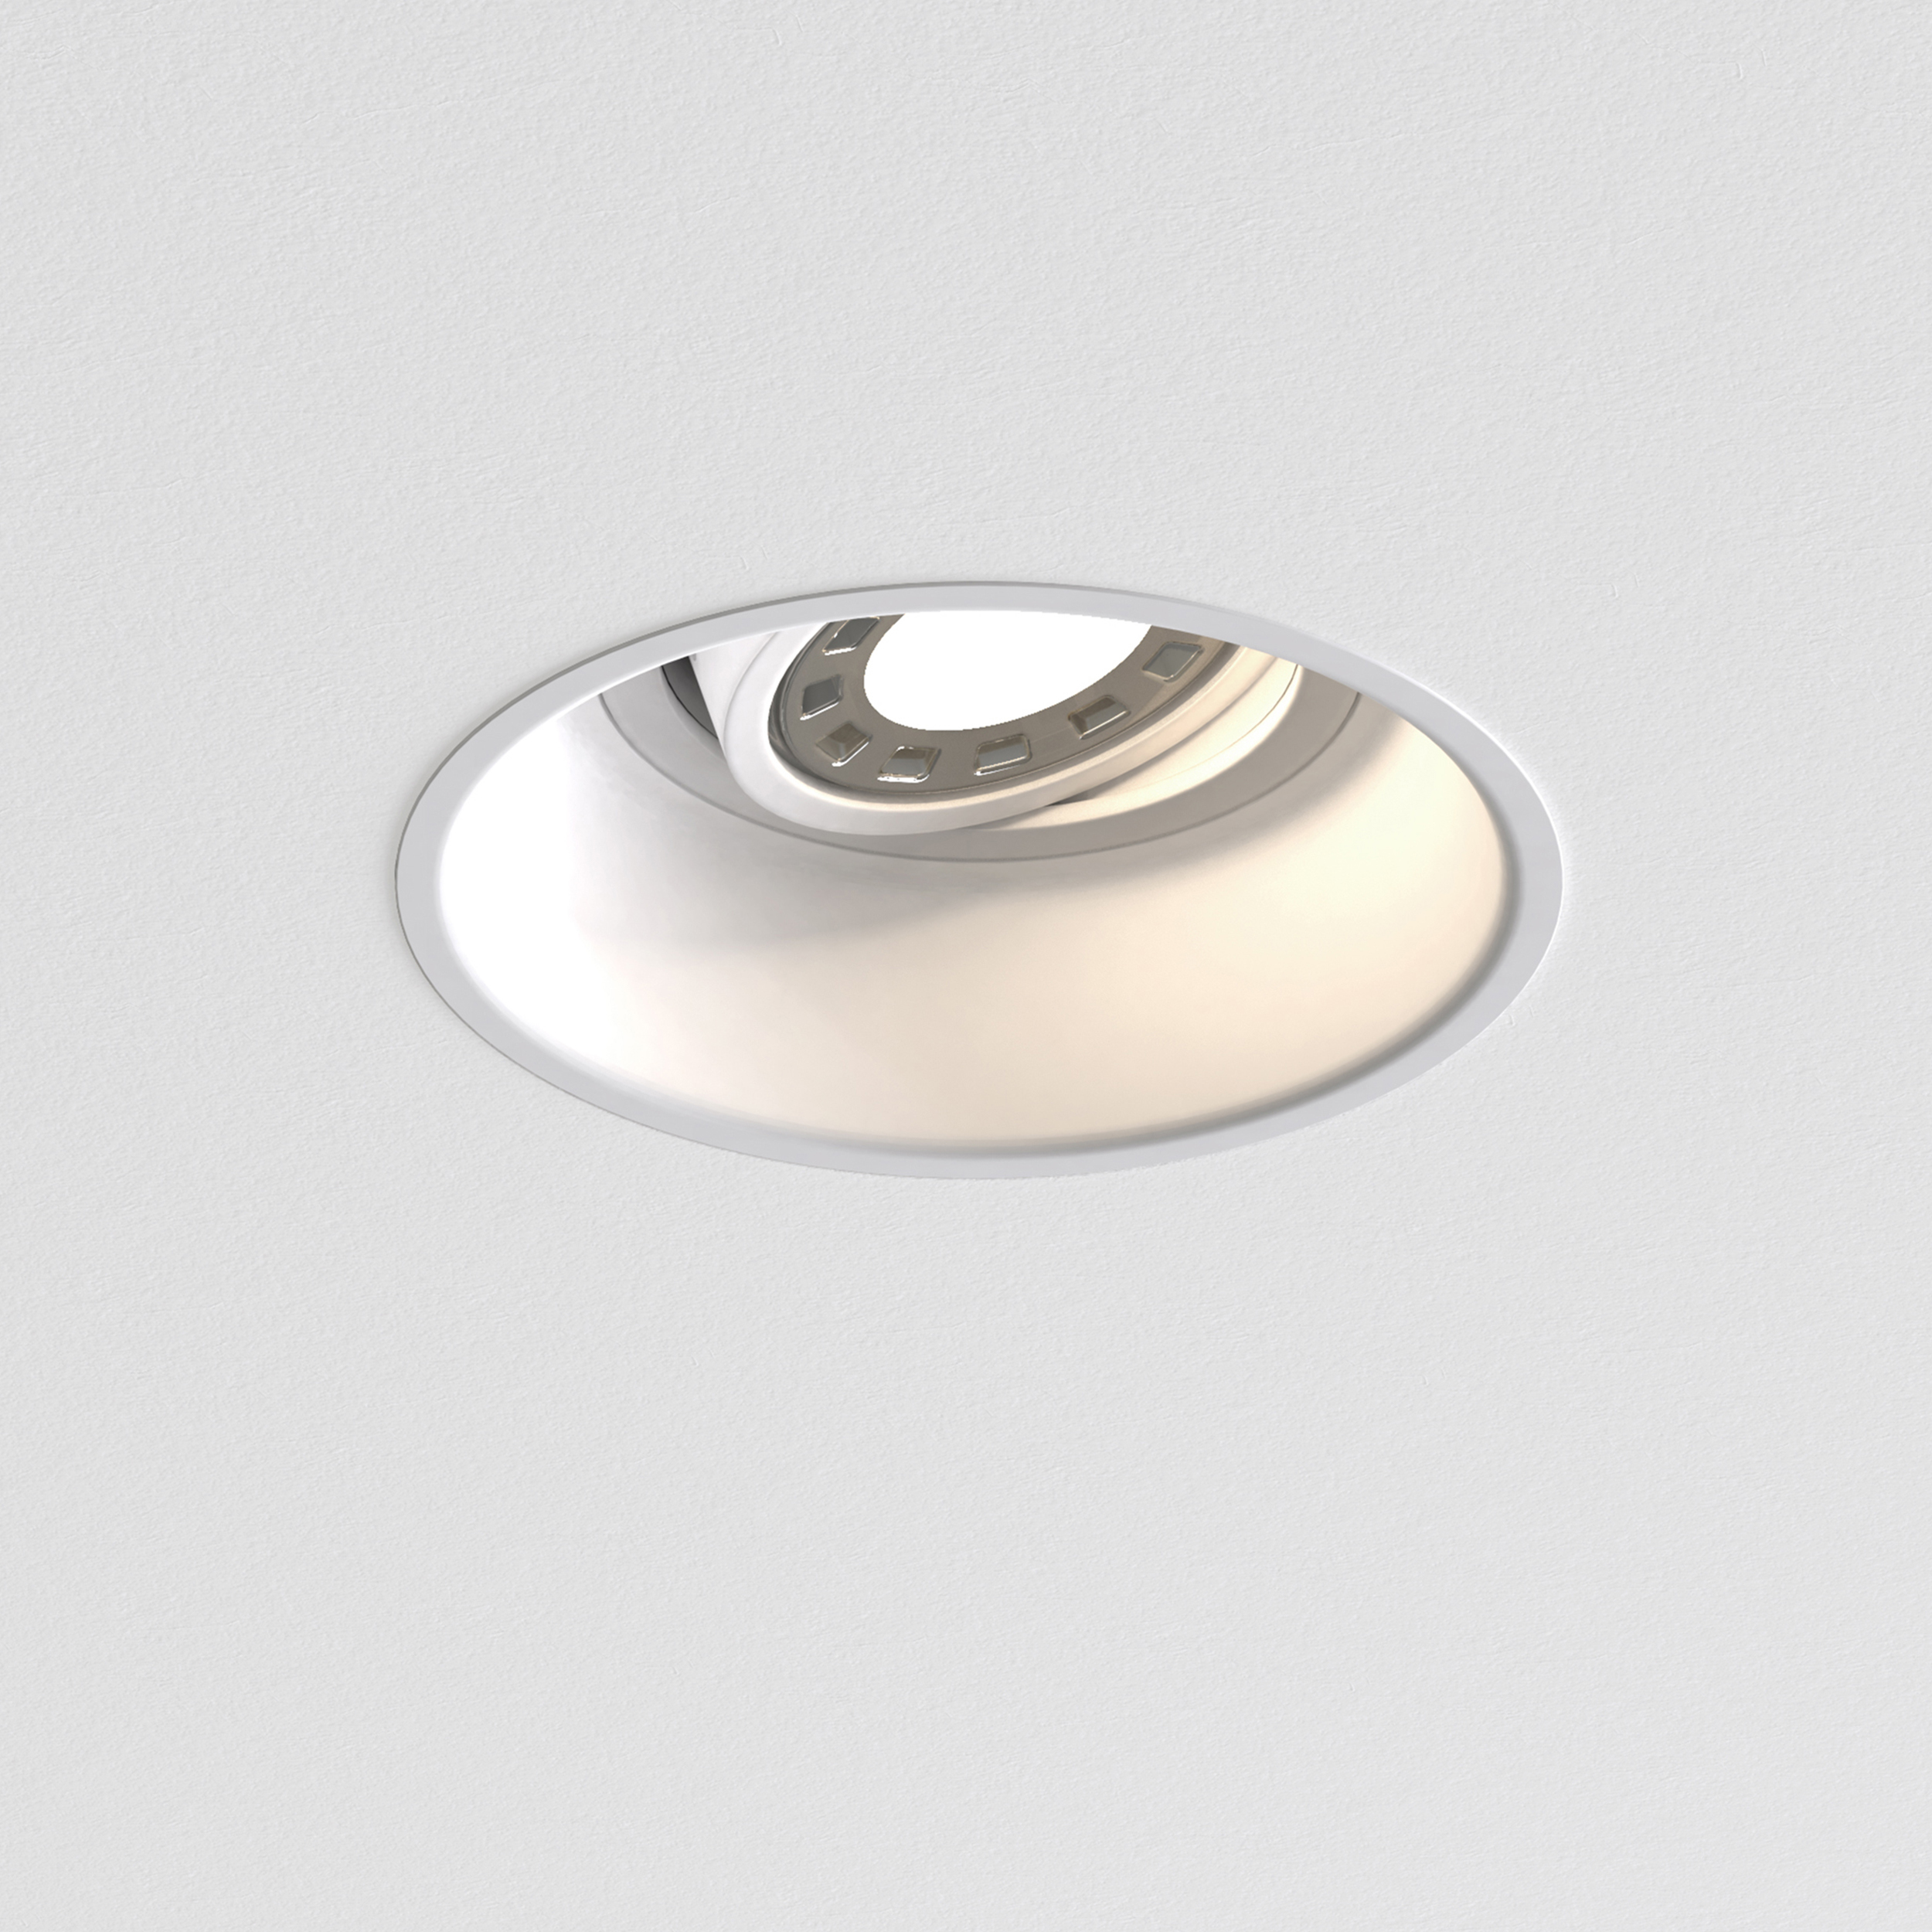 Встраиваемый светильник Astro Minima 1249008 (5739), 1xGU10x50W, белый, металл - фото 1